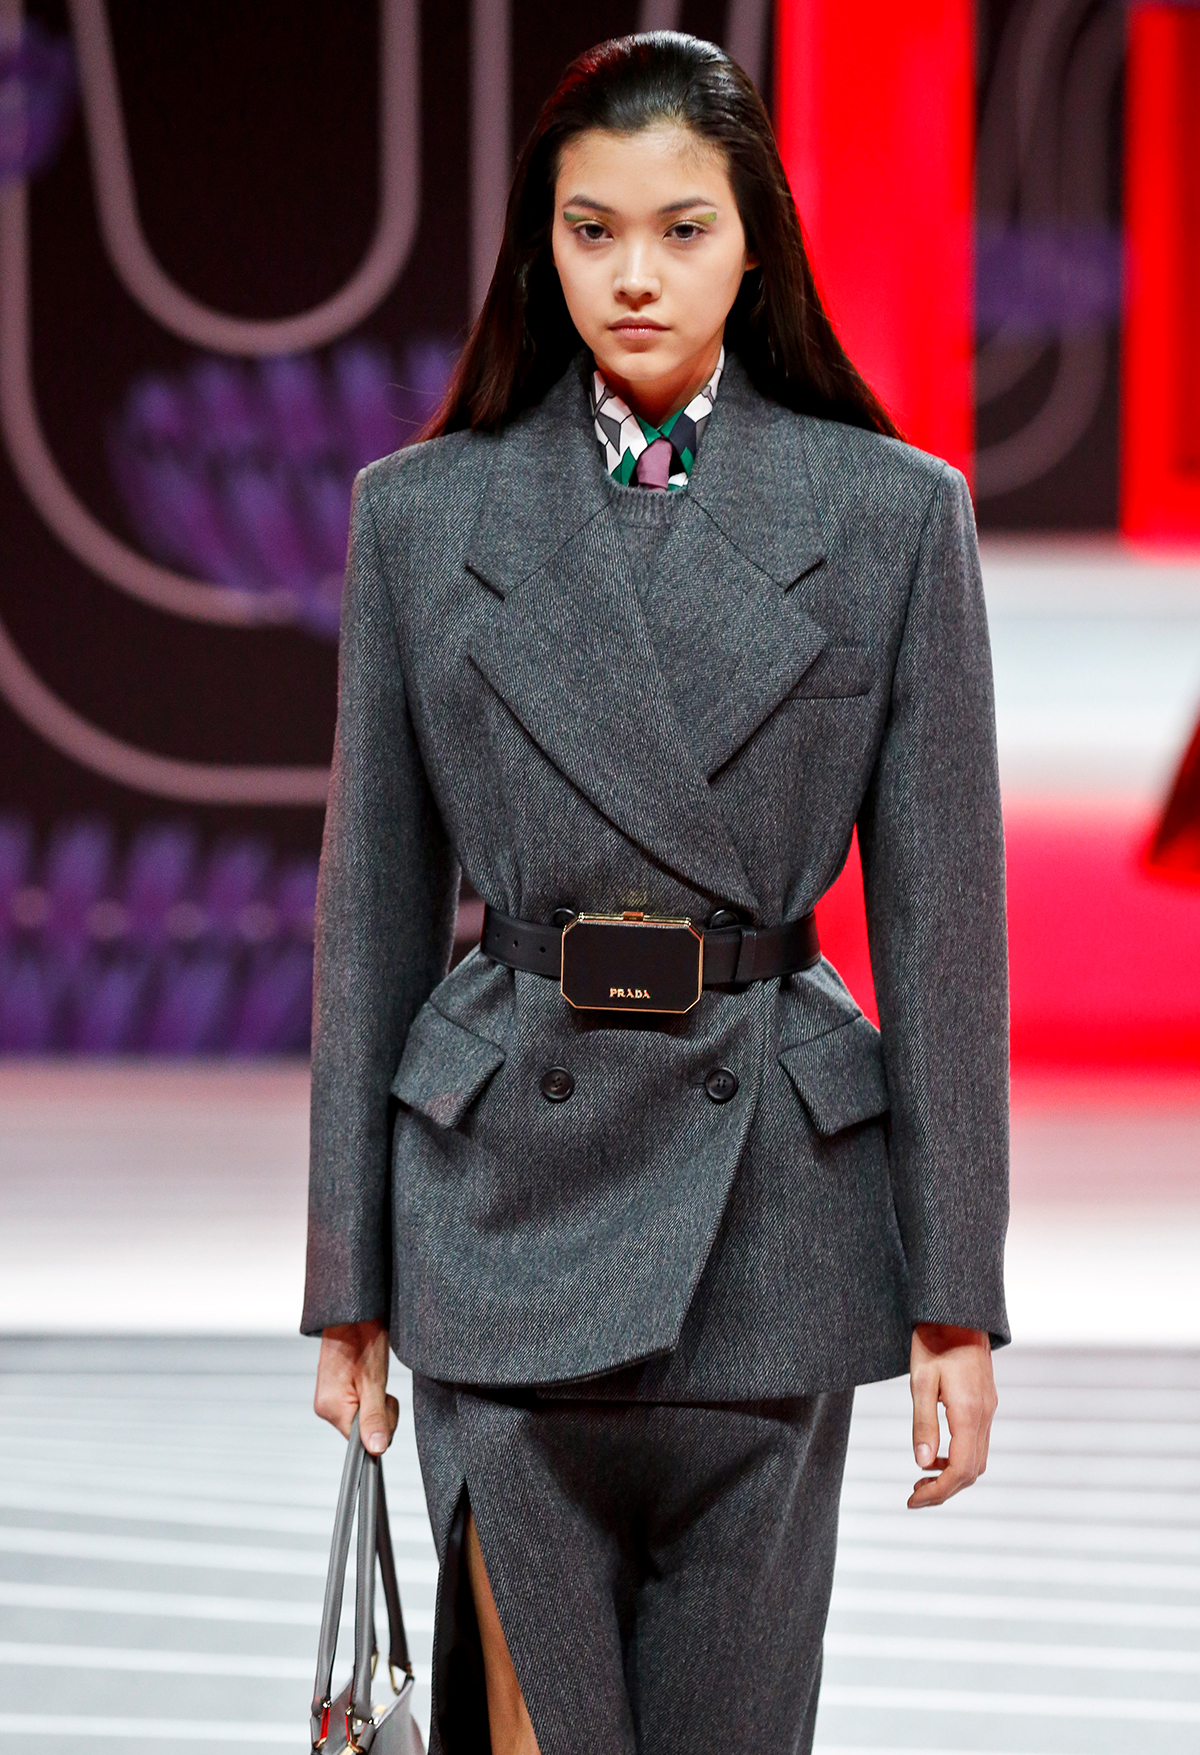 Autumn winter 2020 fashion trends: Prada belted jacket